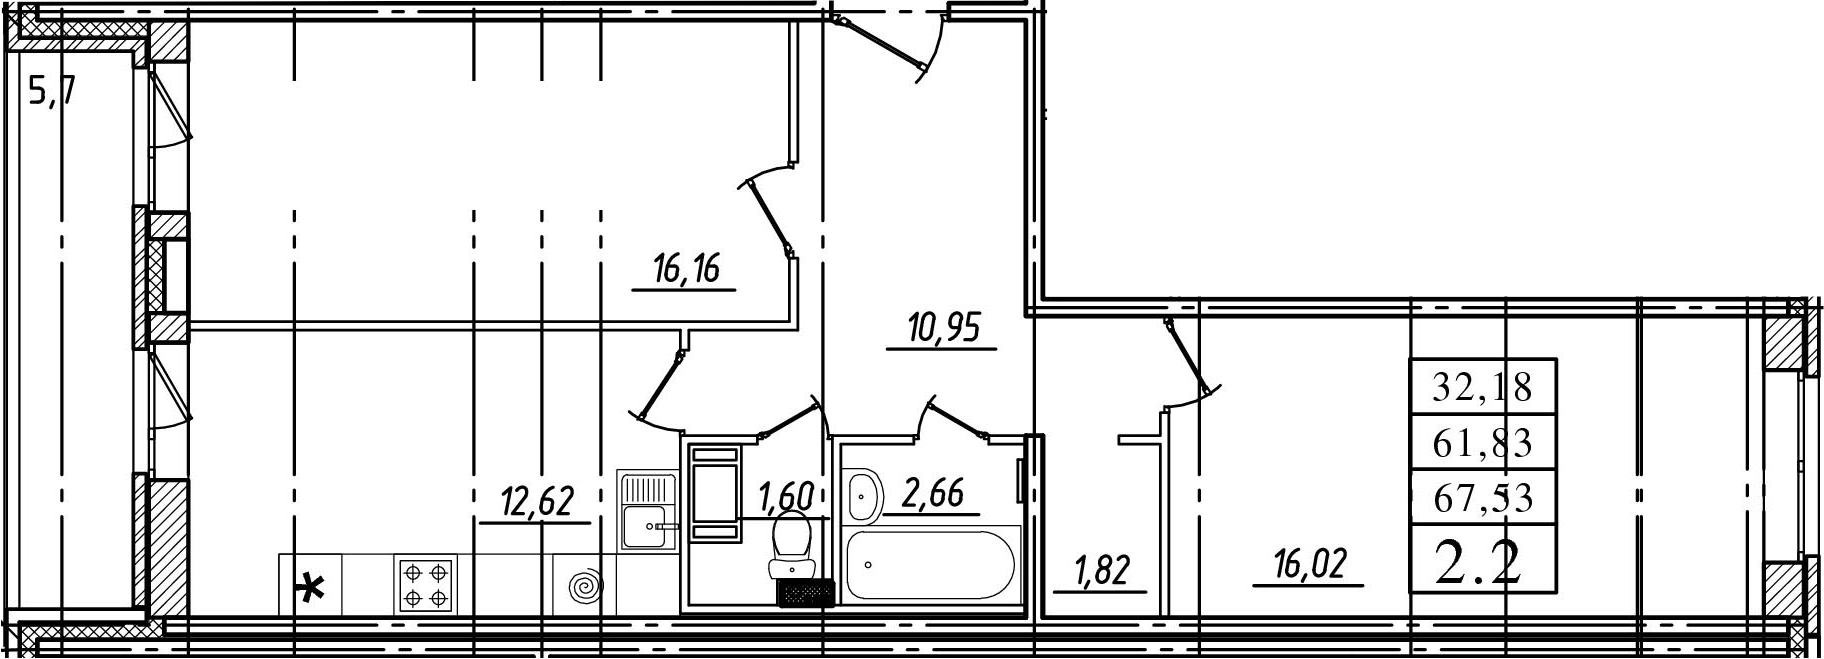 2-комнатная, 61.83 м²– 2